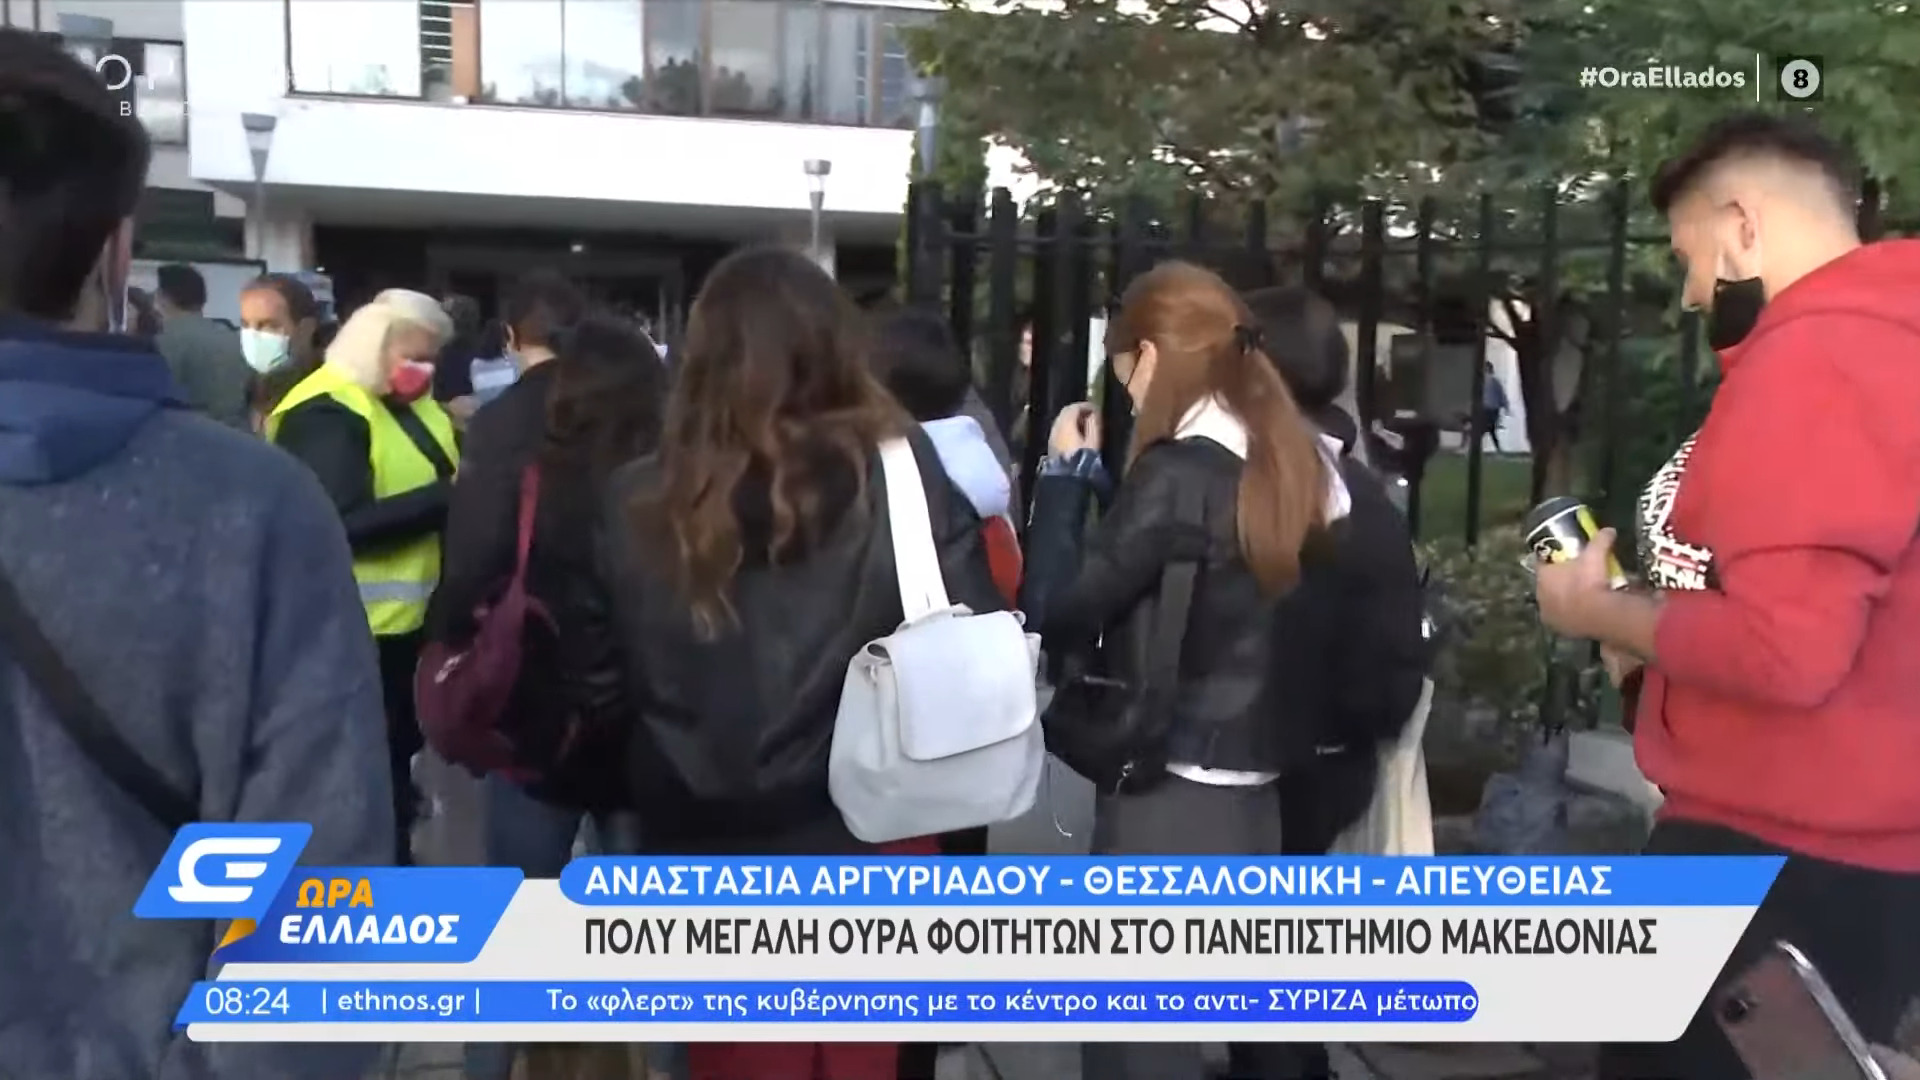 Μεγάλη ουρά φοιτητών στο Πανεπιστήμιο Μακεδονίας | Ρεπορταζ Open